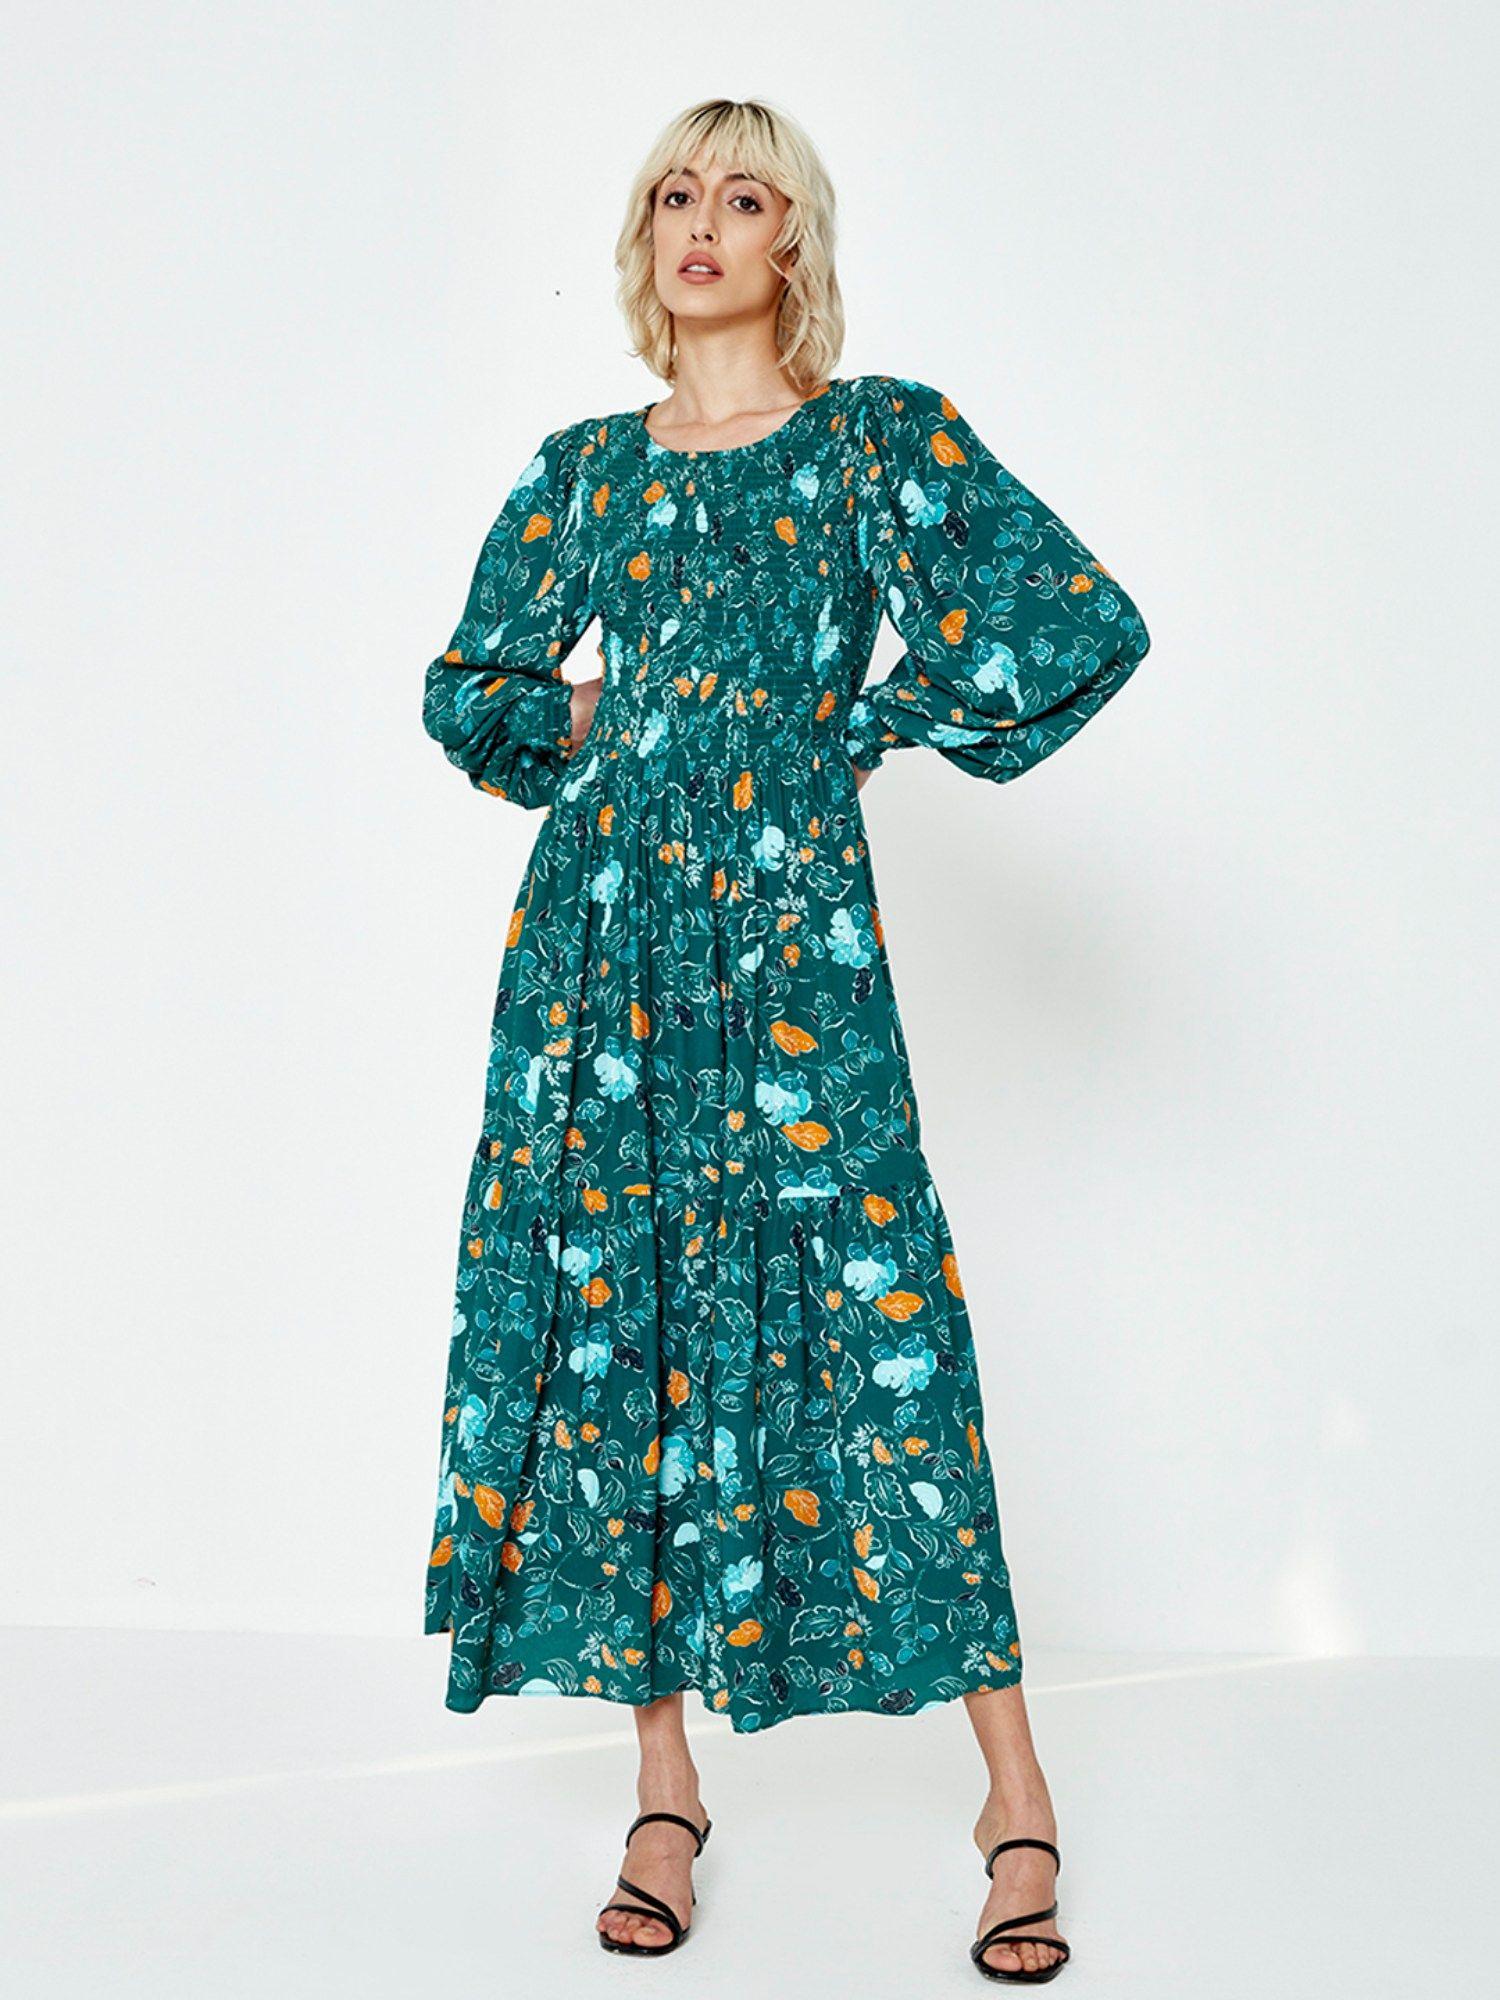 teal-floral-print-midi-dress